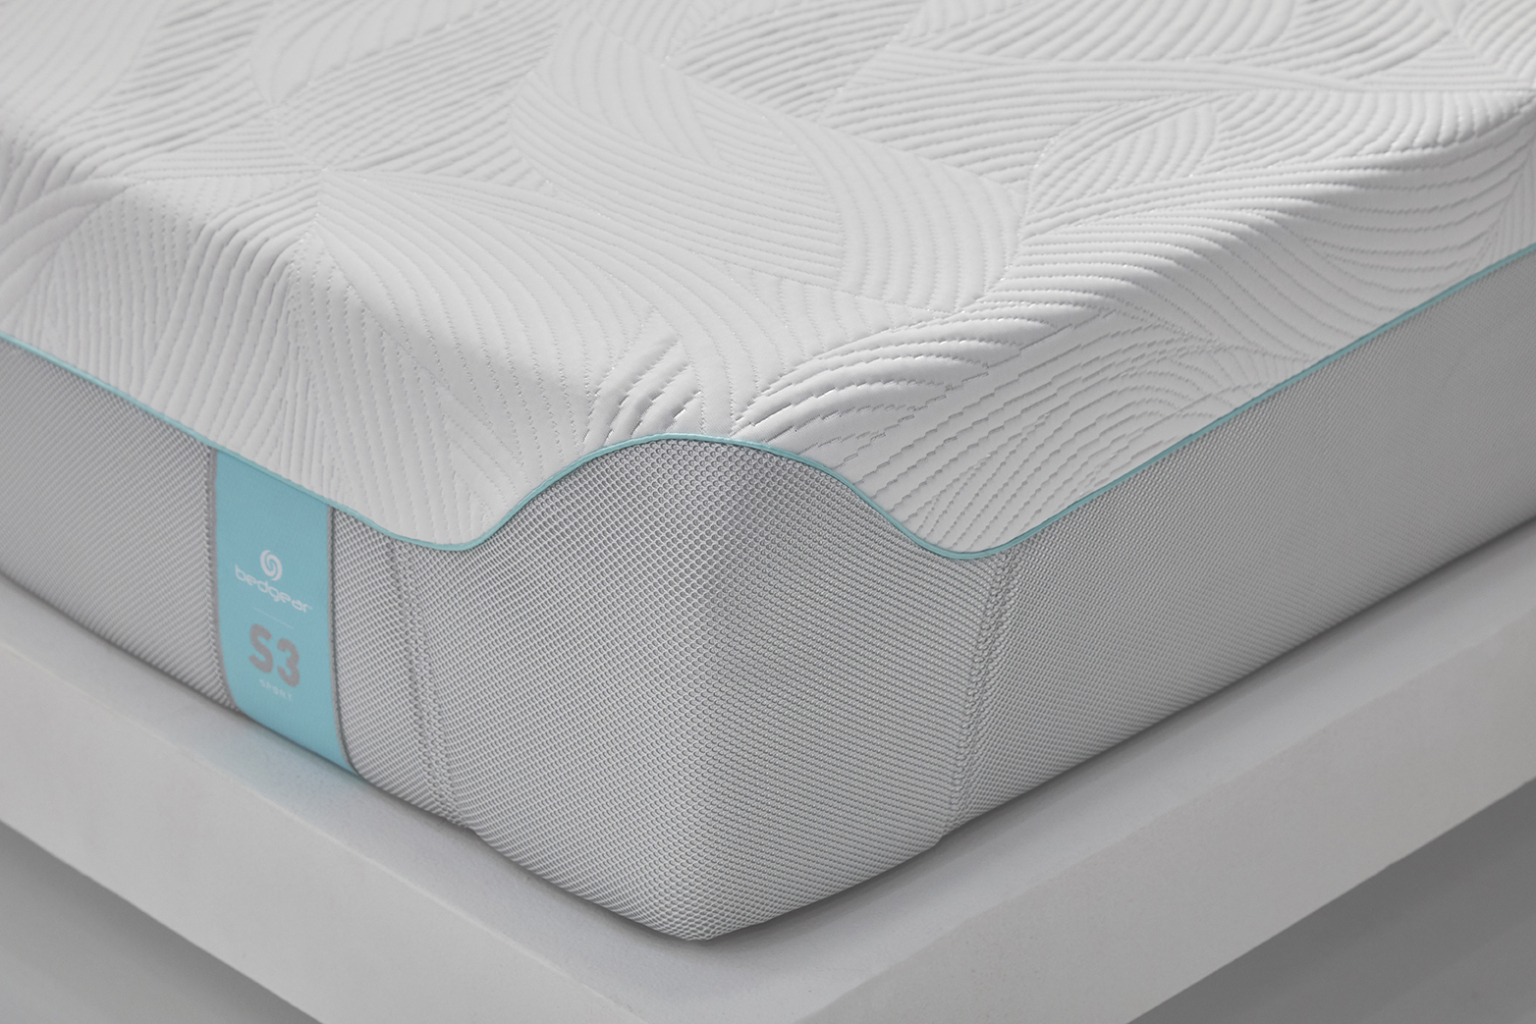 bedgear s3 mattress reviews